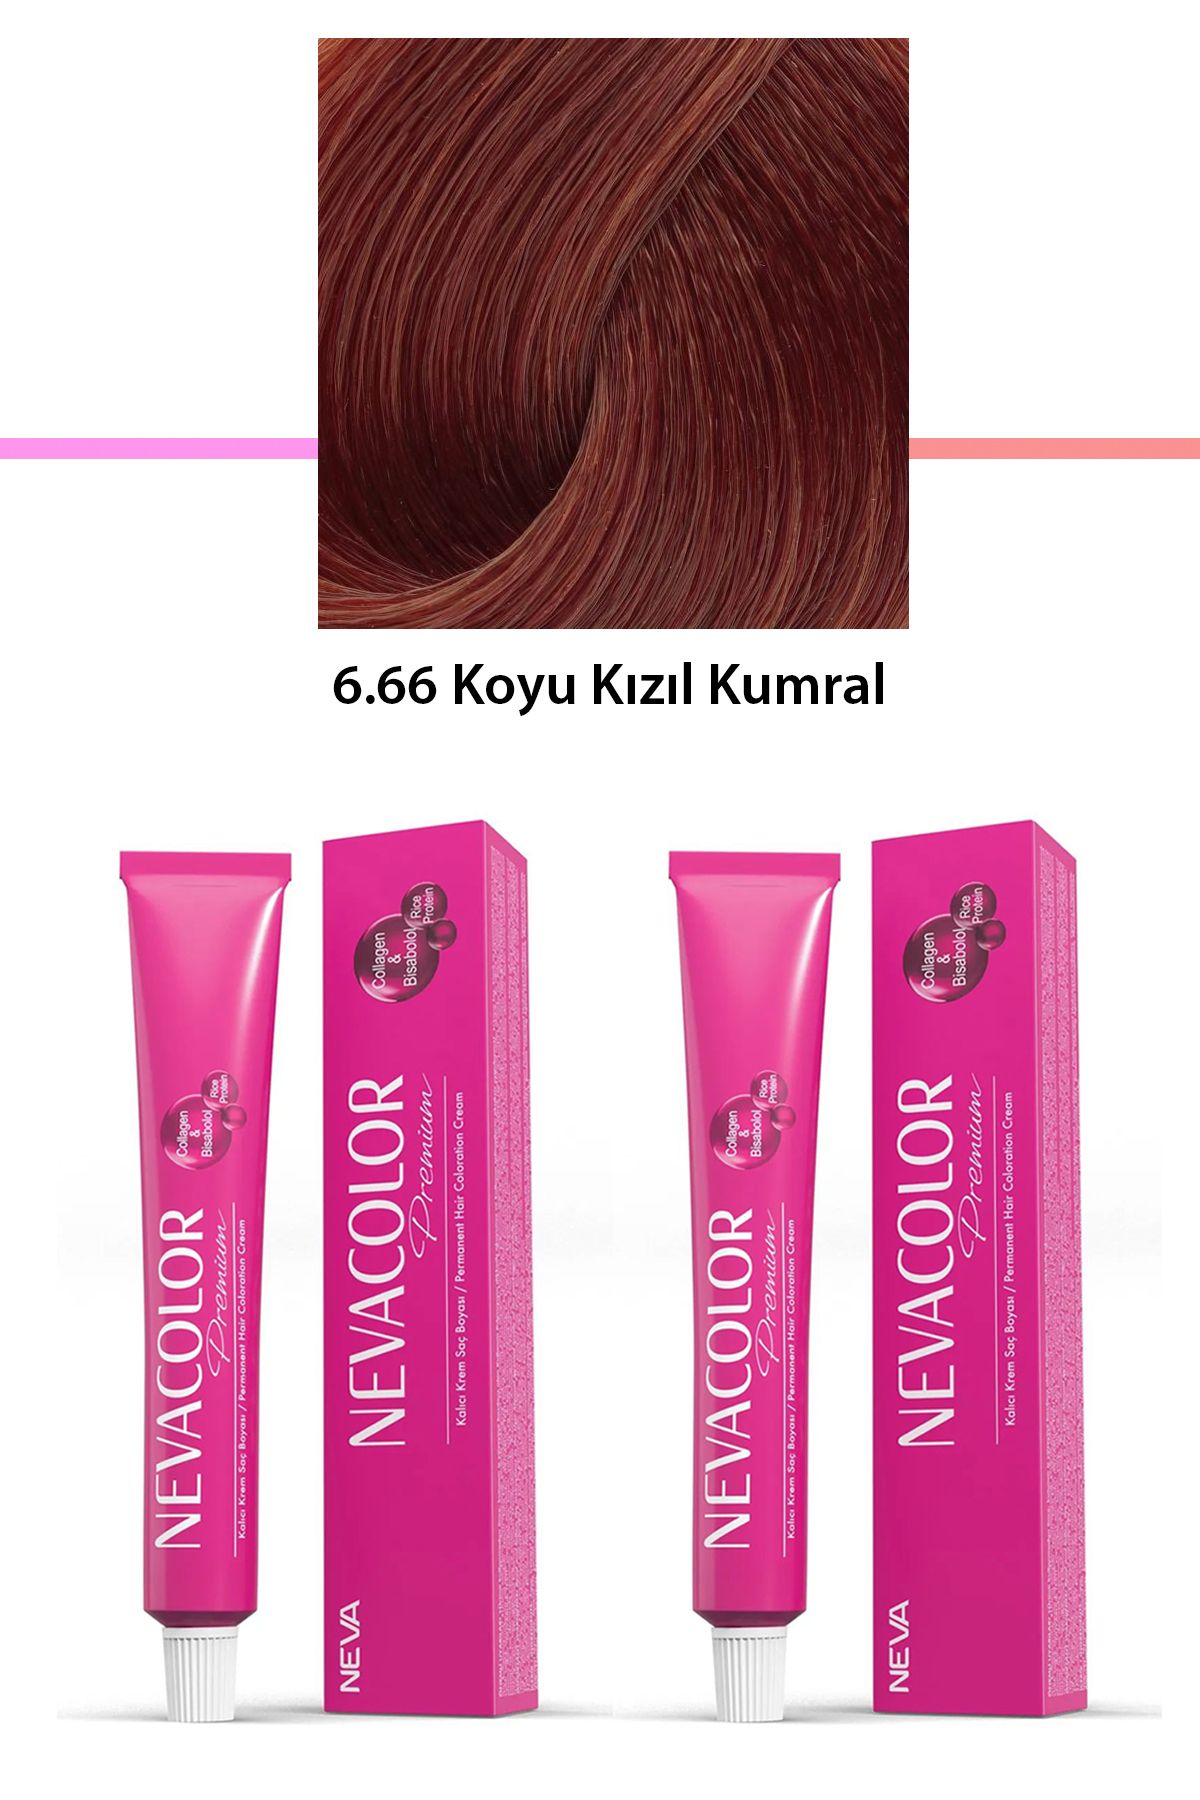 Neva Color 2 li Set Premium 6.66 Koyu Kızıl Kumral - Kalıcı Krem Saç Boyası 2 X 50 g Tüp